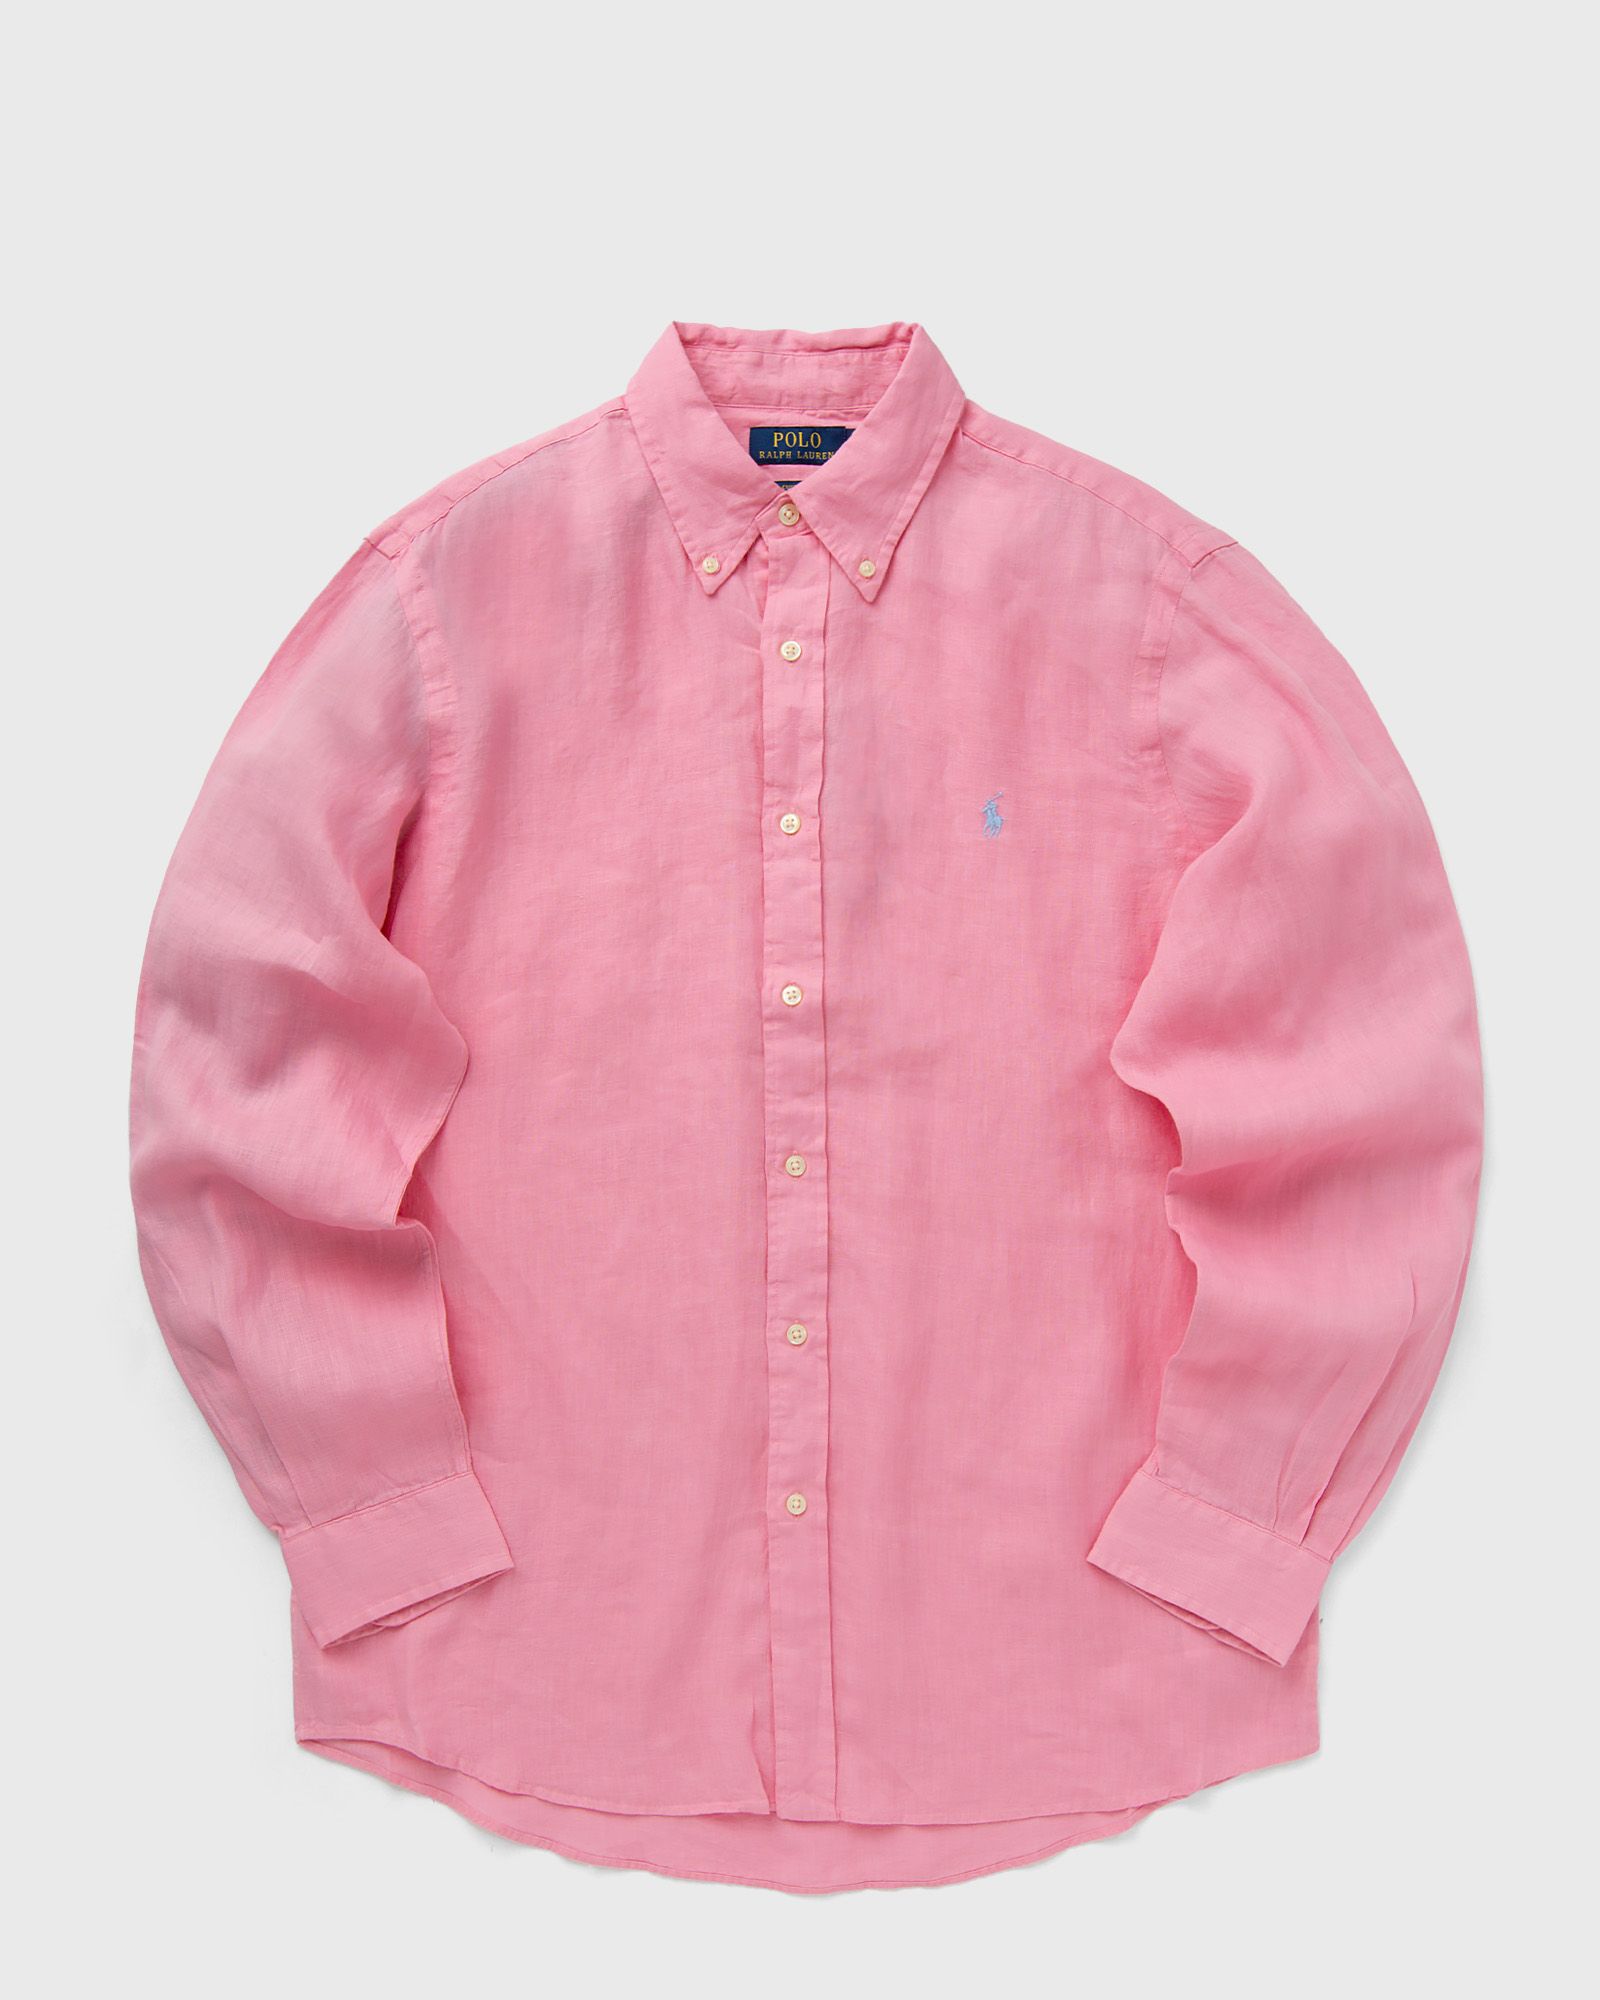 Polo Ralph Lauren - long sleeve-sport shirt men longsleeves pink in größe:xl